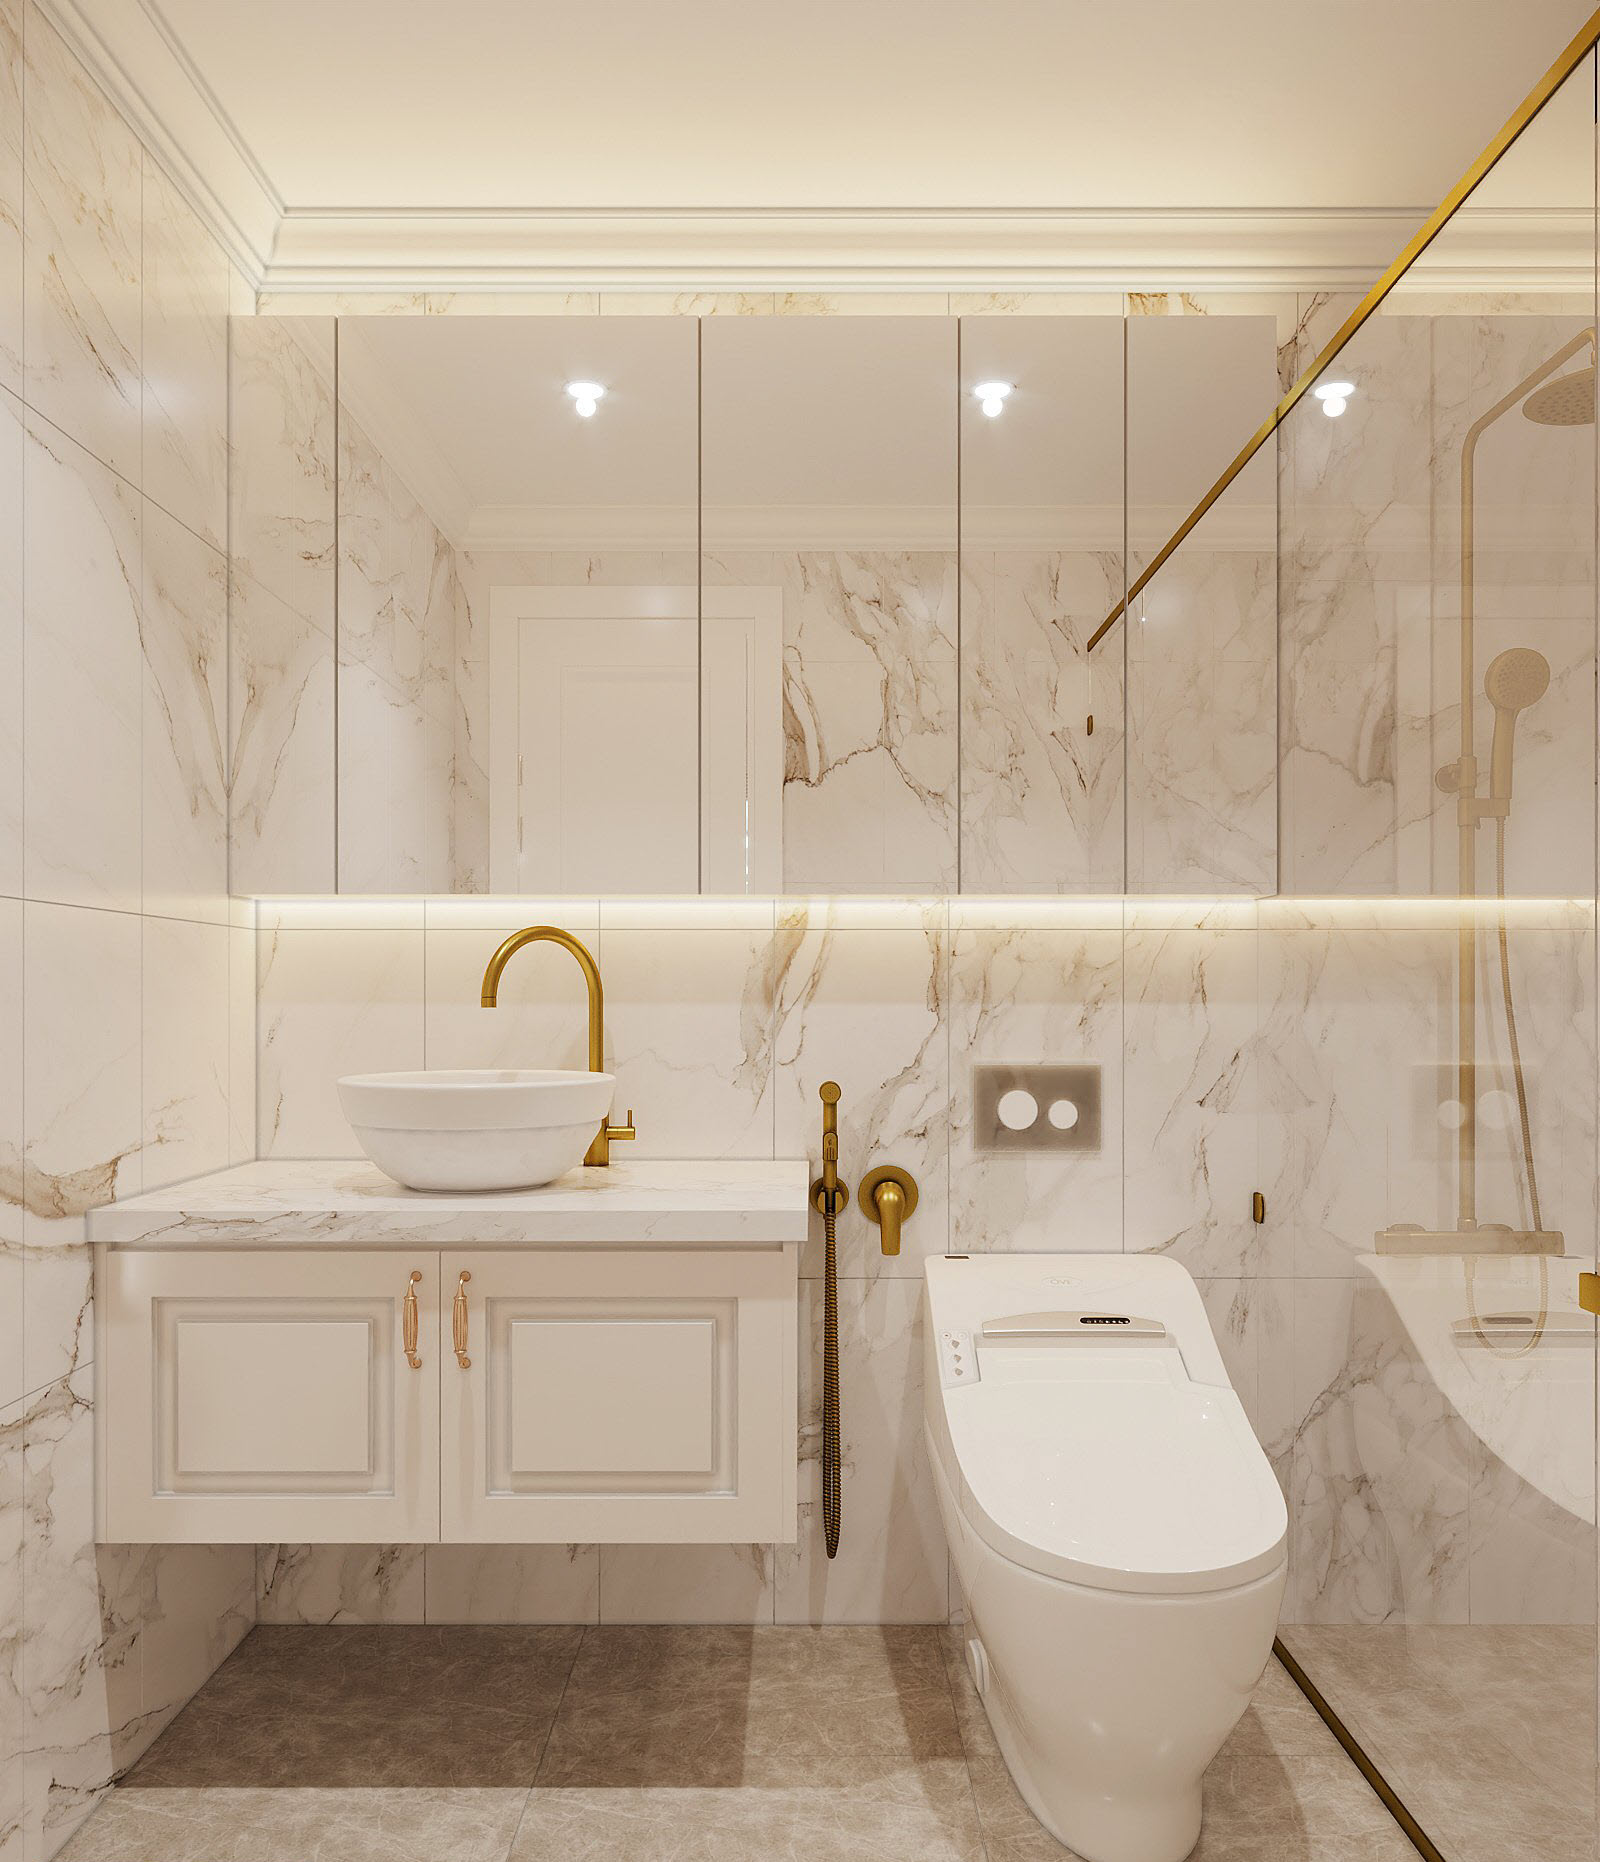 Phòng tắm trong căn hộ được ốp lát đá cẩm thạch sang trọng, sạch sẽ. Chất liệu gương kính tạo cảm giác rộng thoáng hơn cho căn phòng.